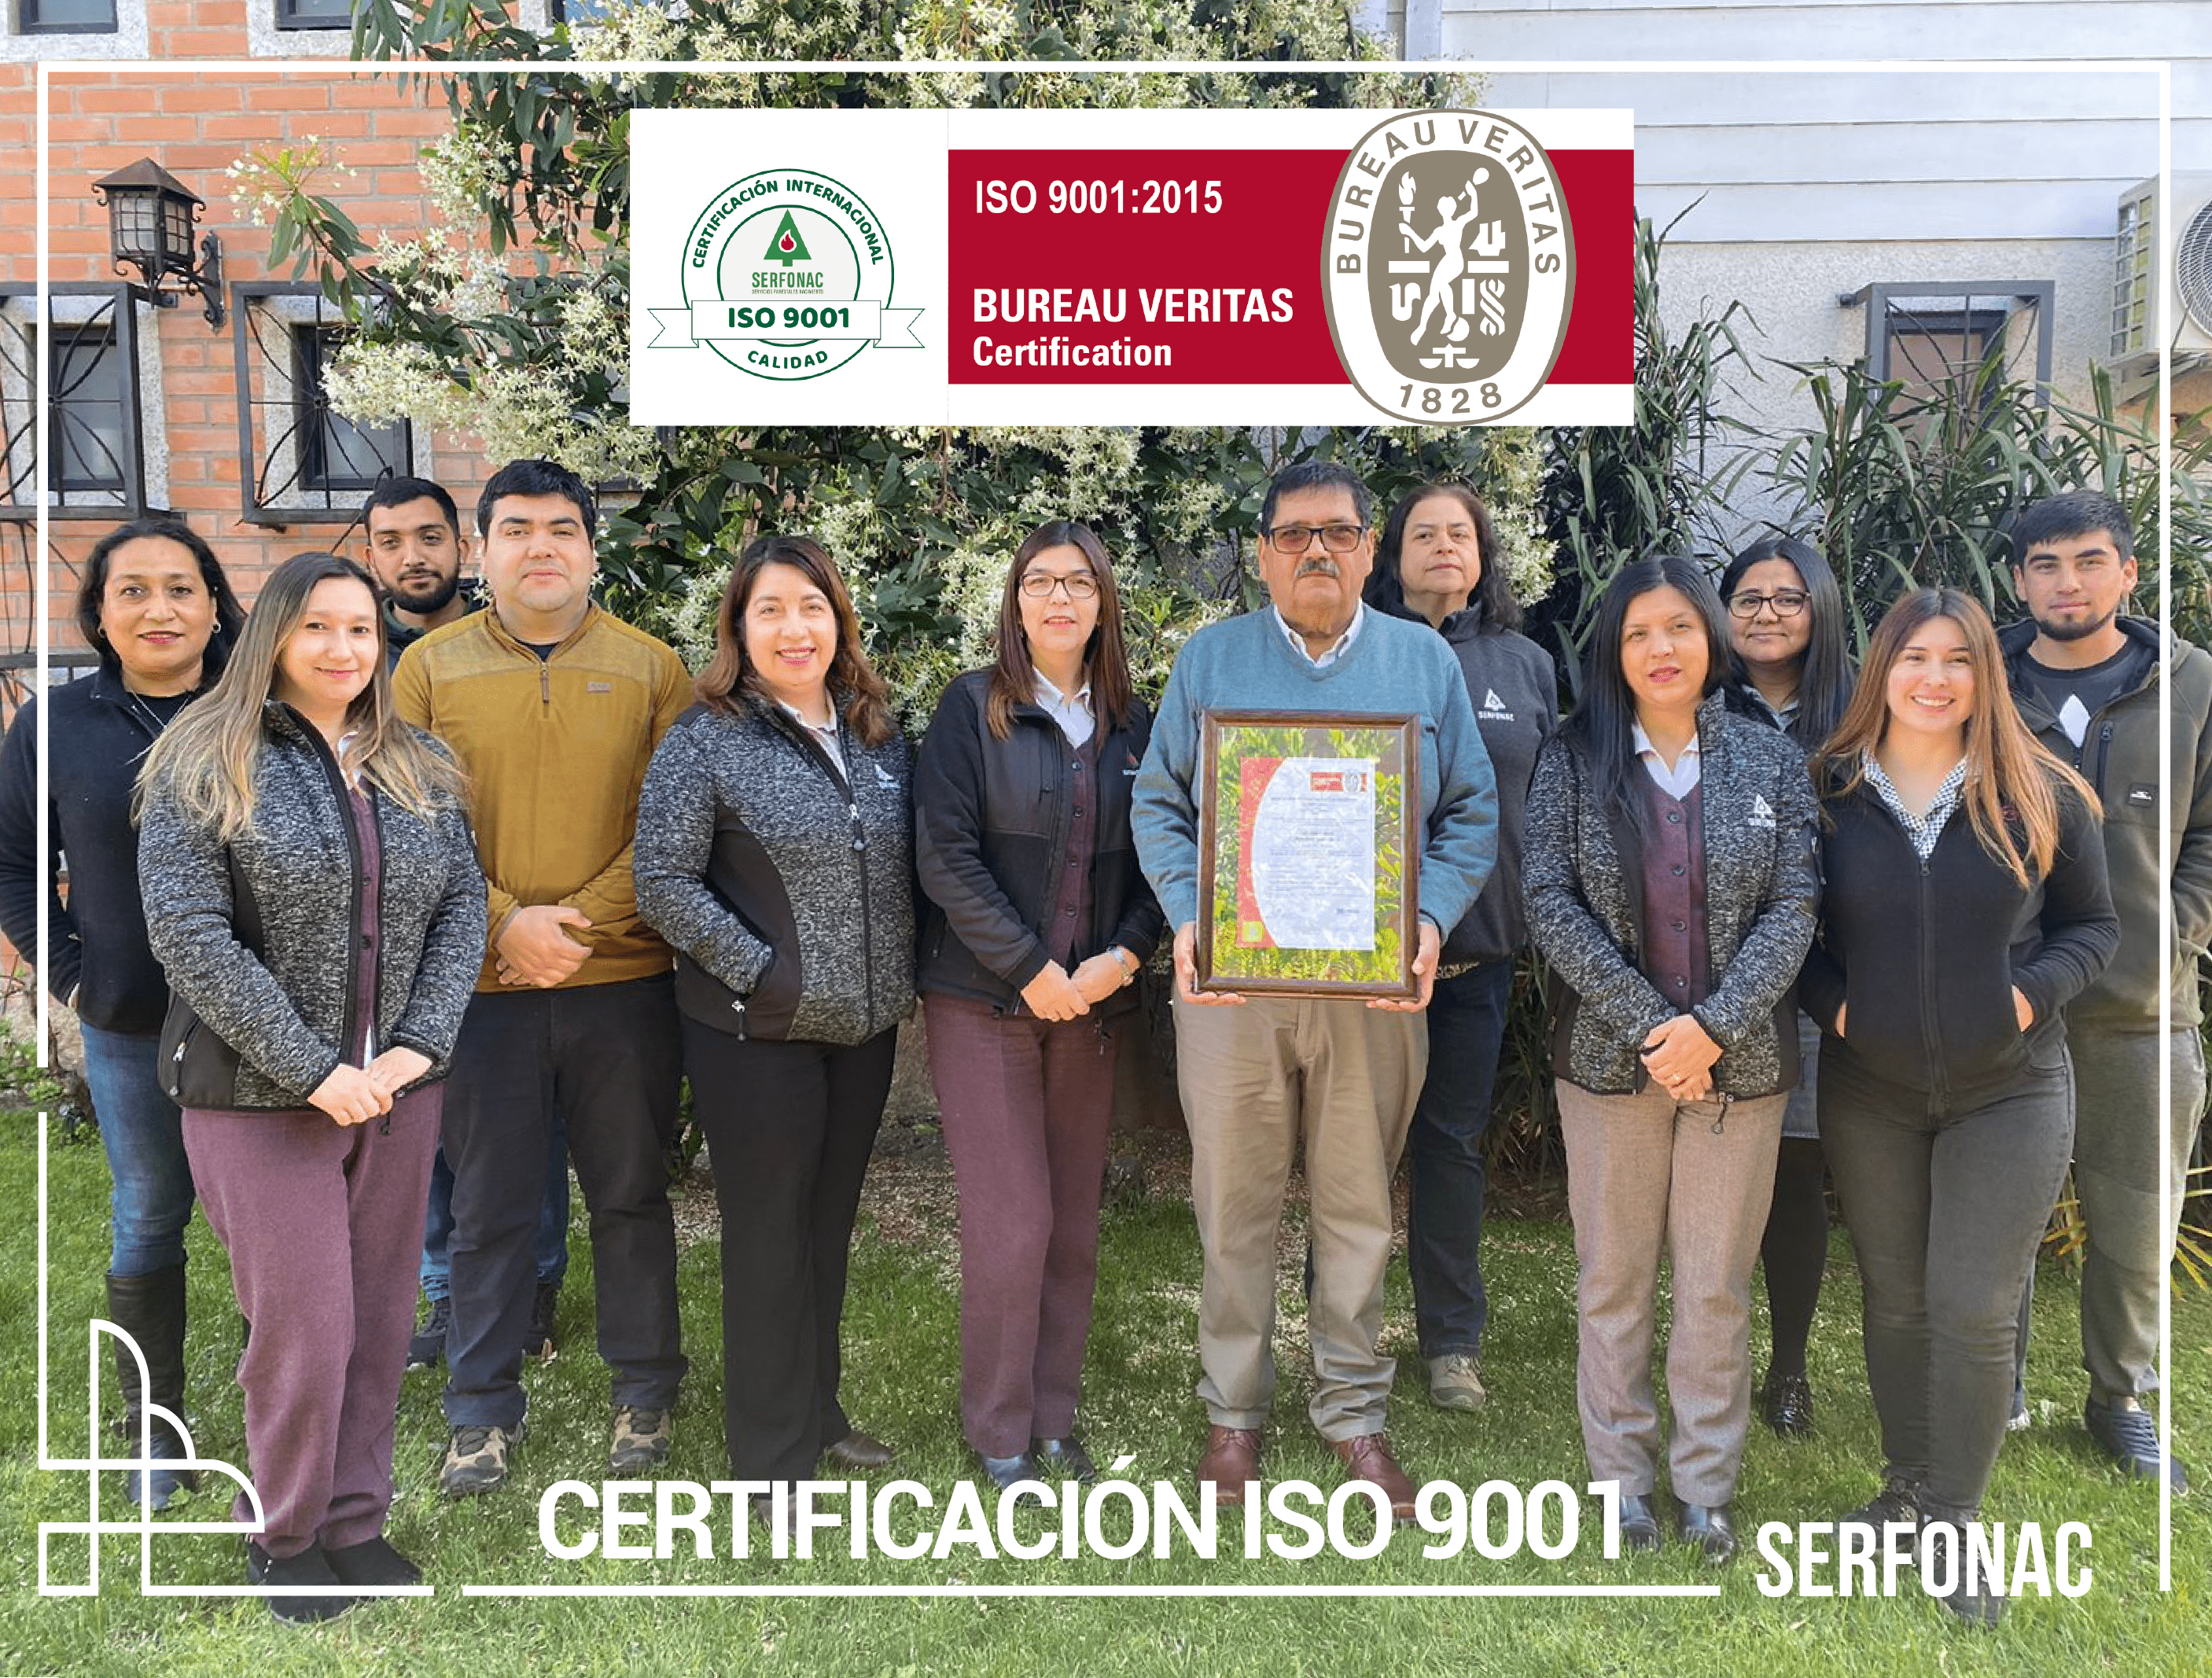 Noticia Pagina web: SERFONAC Obtiene certificación de calidad ISO 9001:2015